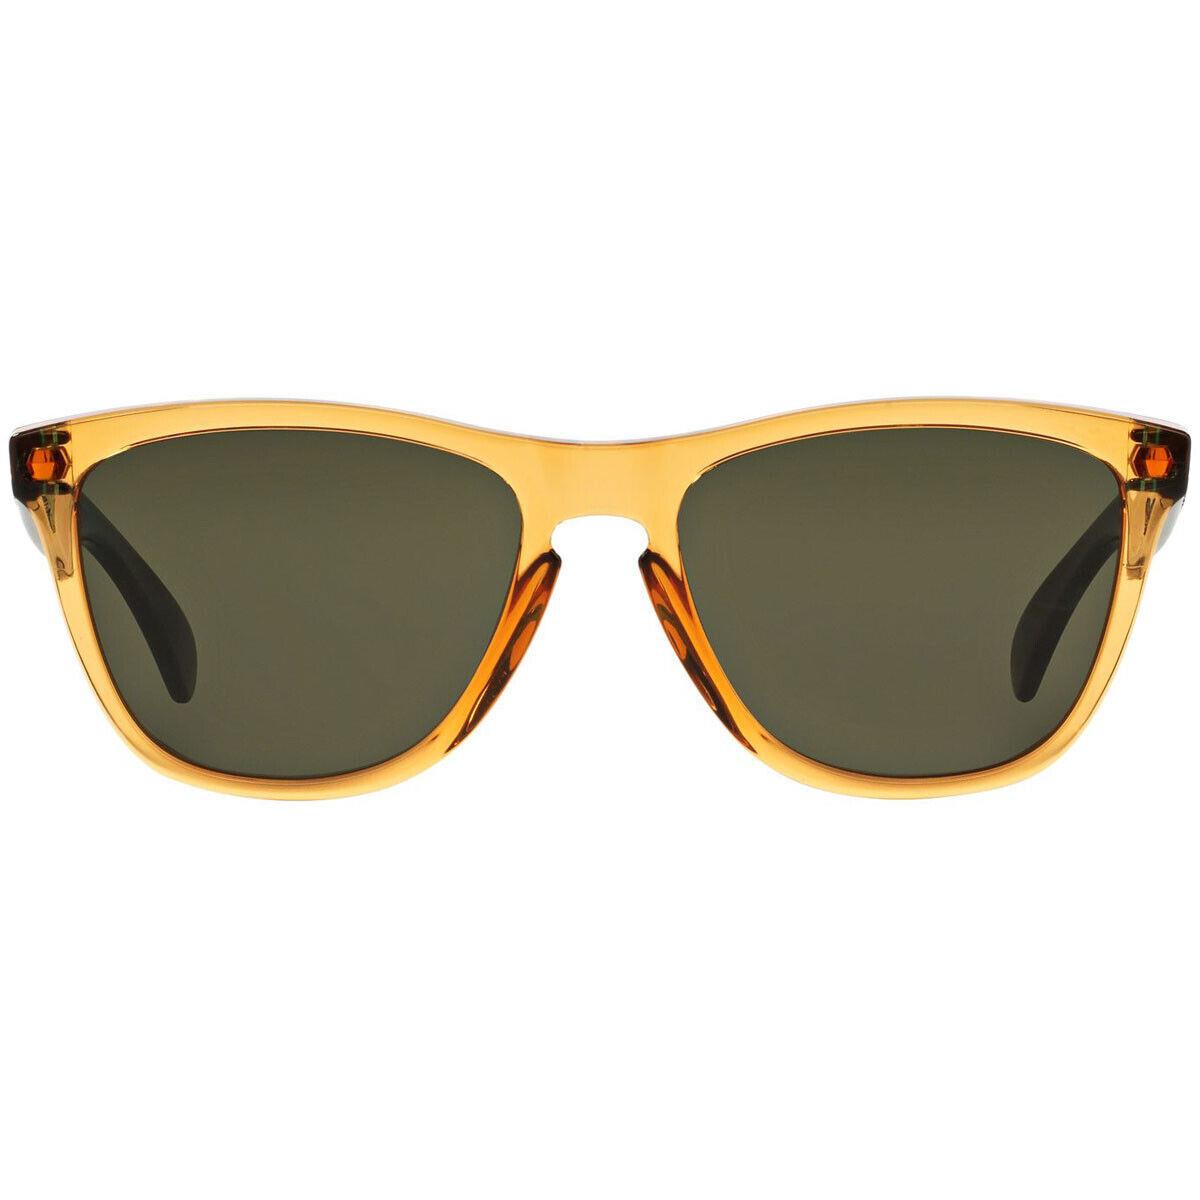 Oakley sunglasses Frogskins - Frame: , Lens: Gray 1